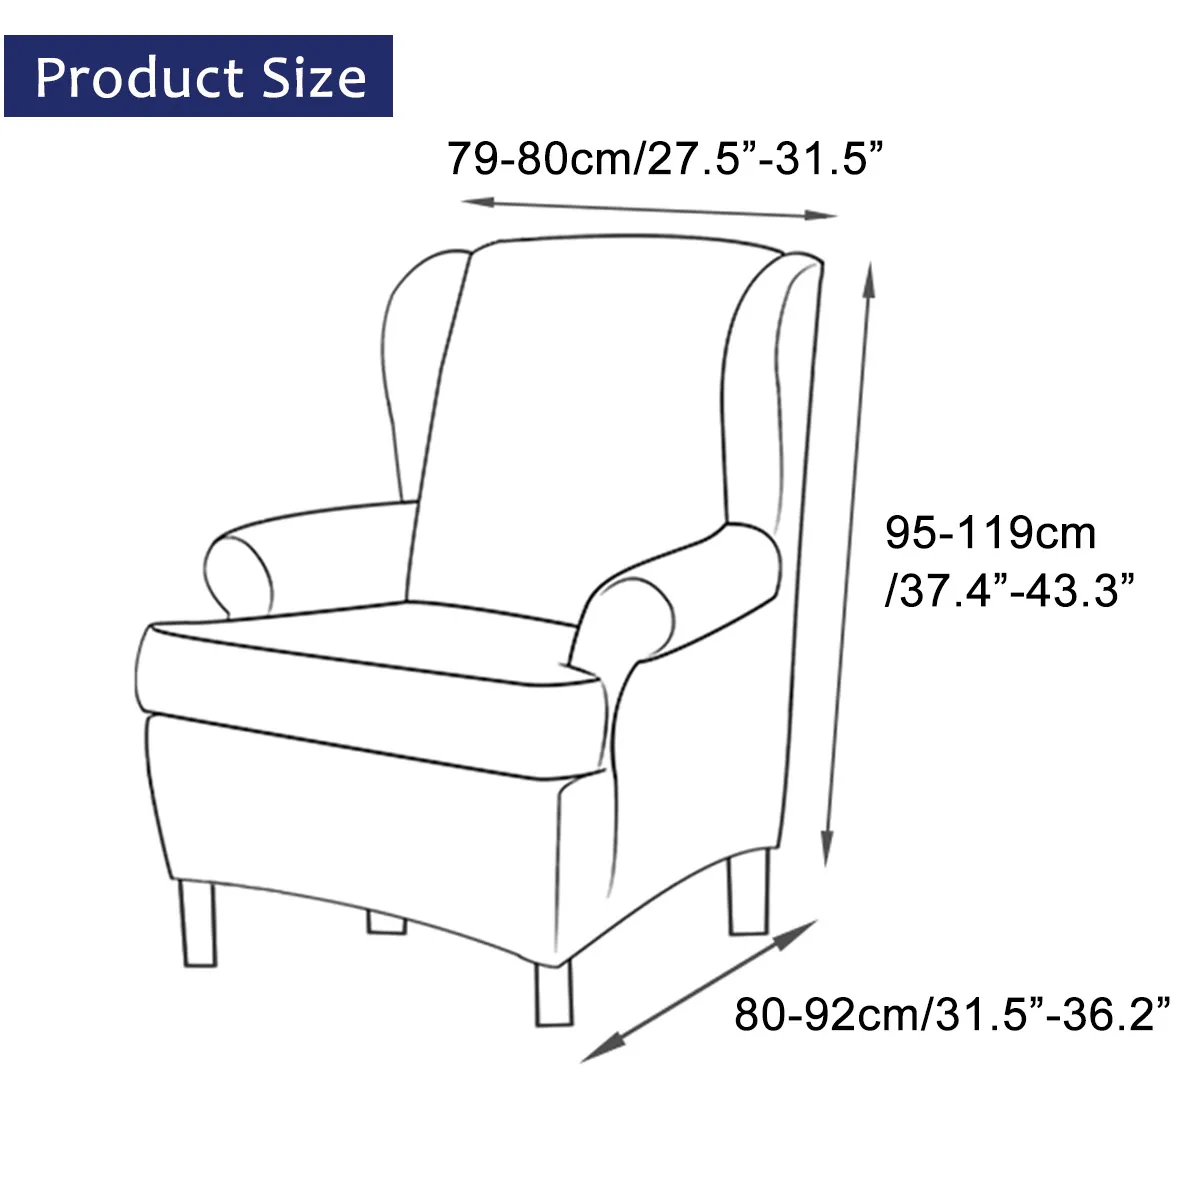 Fodera sedia con schienale inclinato con bracciolo inclinato Poltrona elastica con schienale ad ala Fodera sedia con schienale ad ala Protezione elasticizzata Protezione con fodera Y2005279457